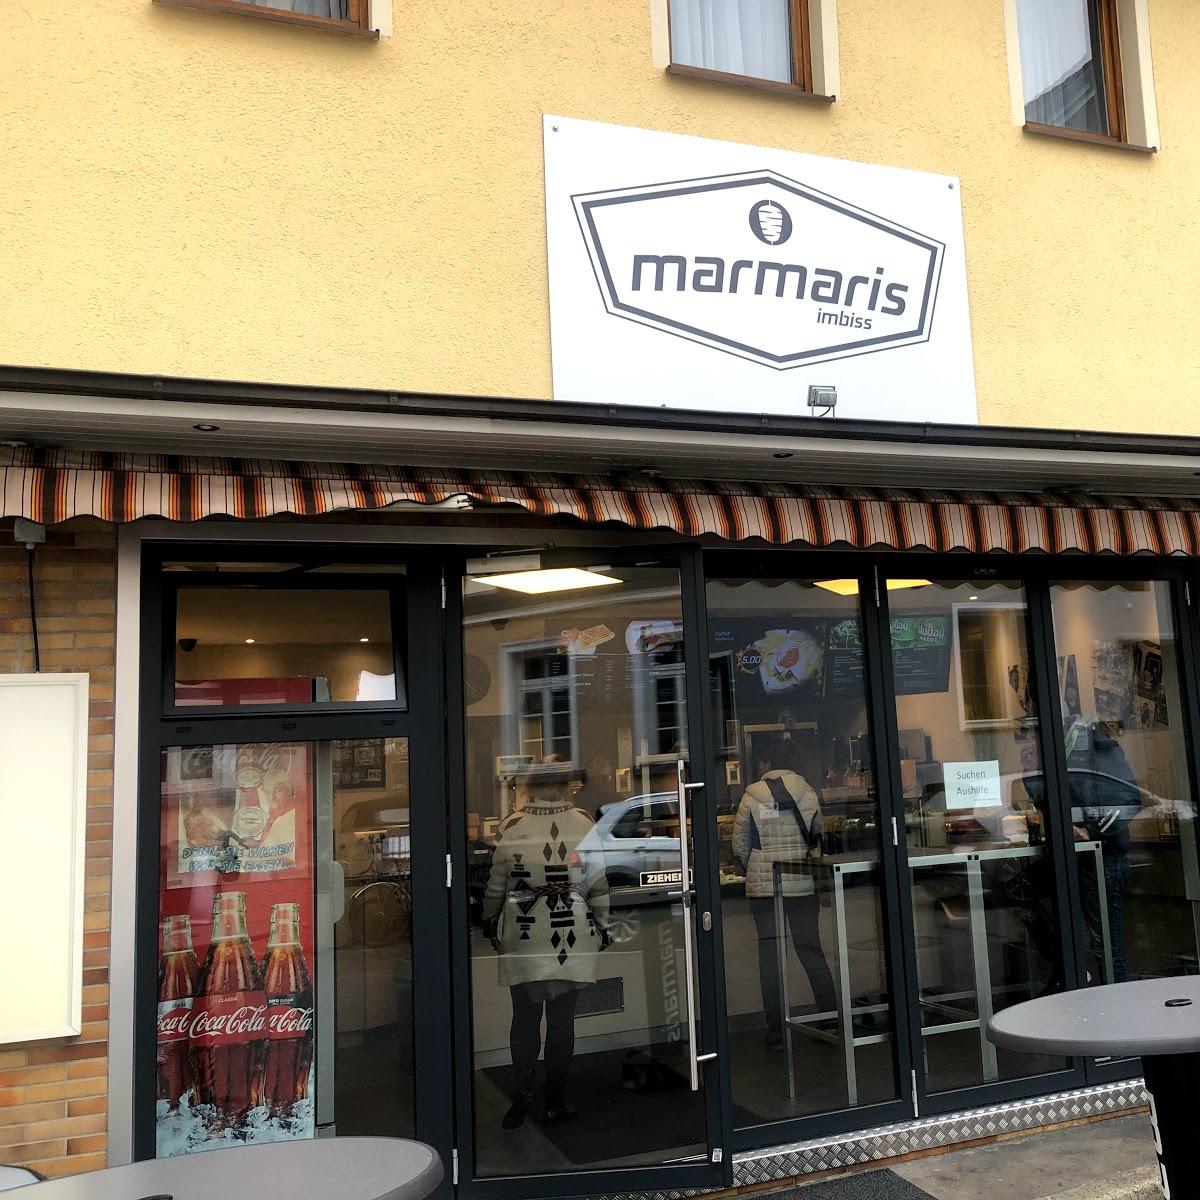 Restaurant "Marmaris-Imbiss" in  Aalen